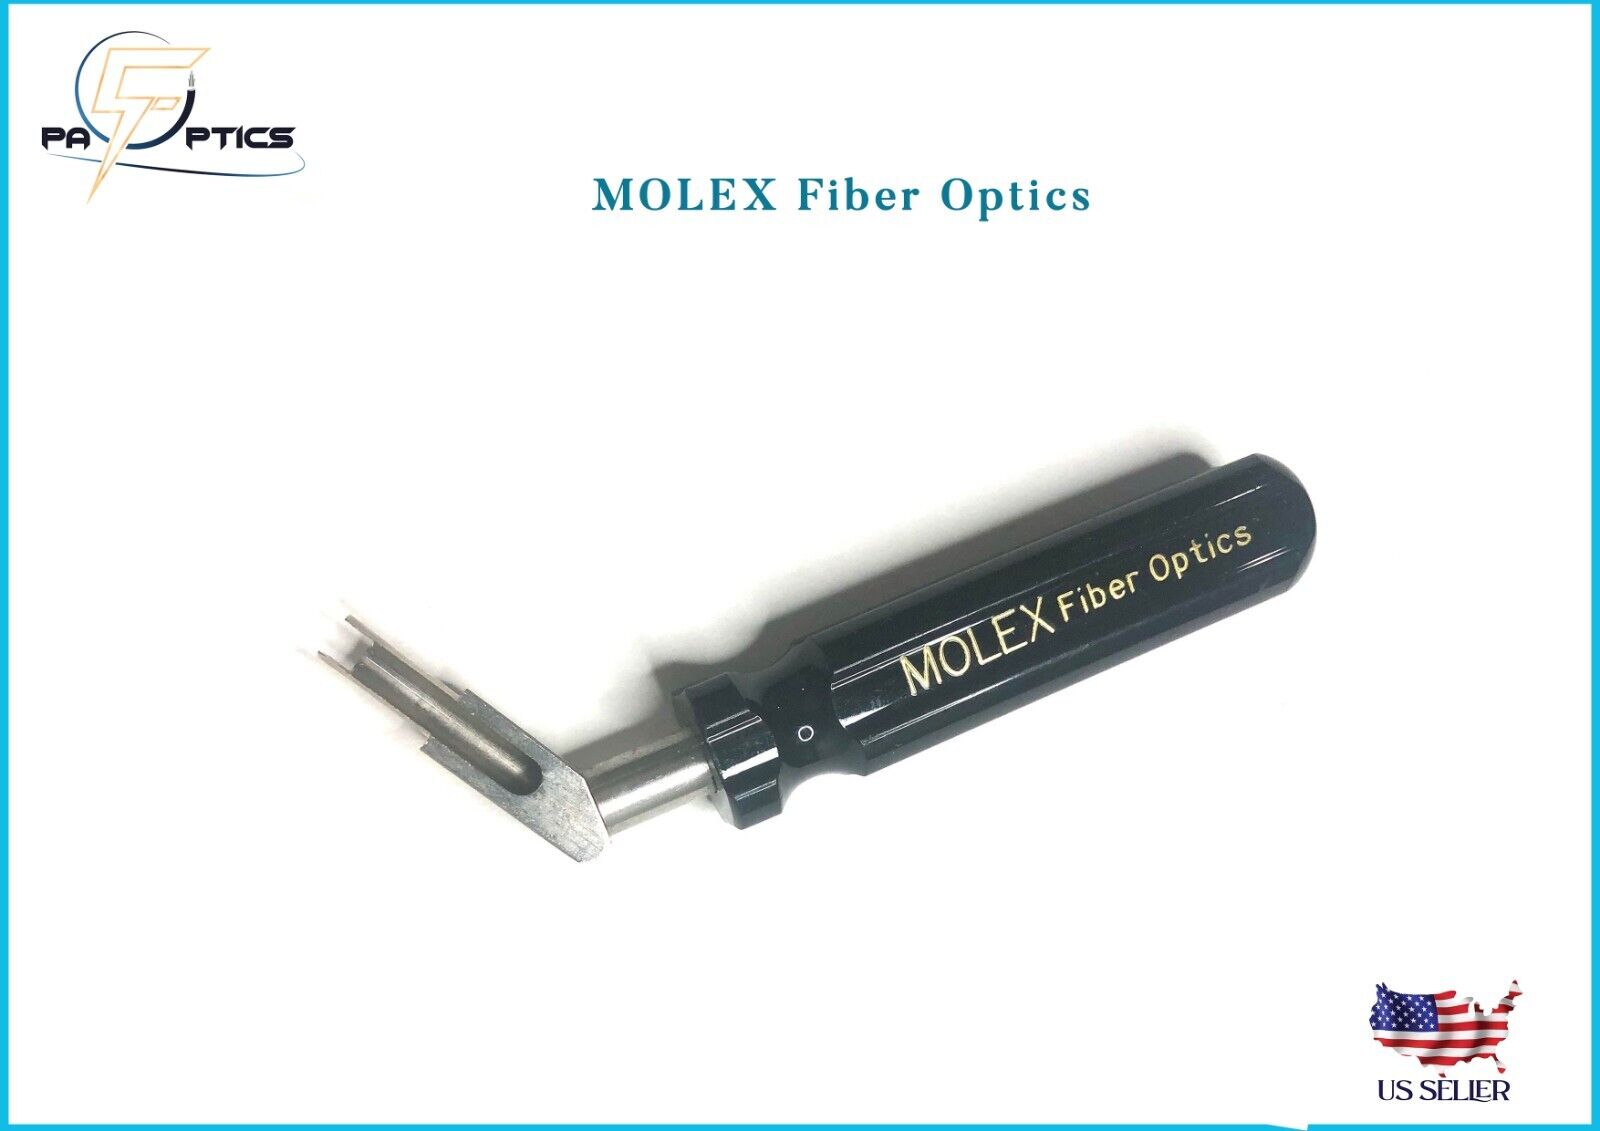 MOLEX Fiber Optics Tools/Nut Drivers